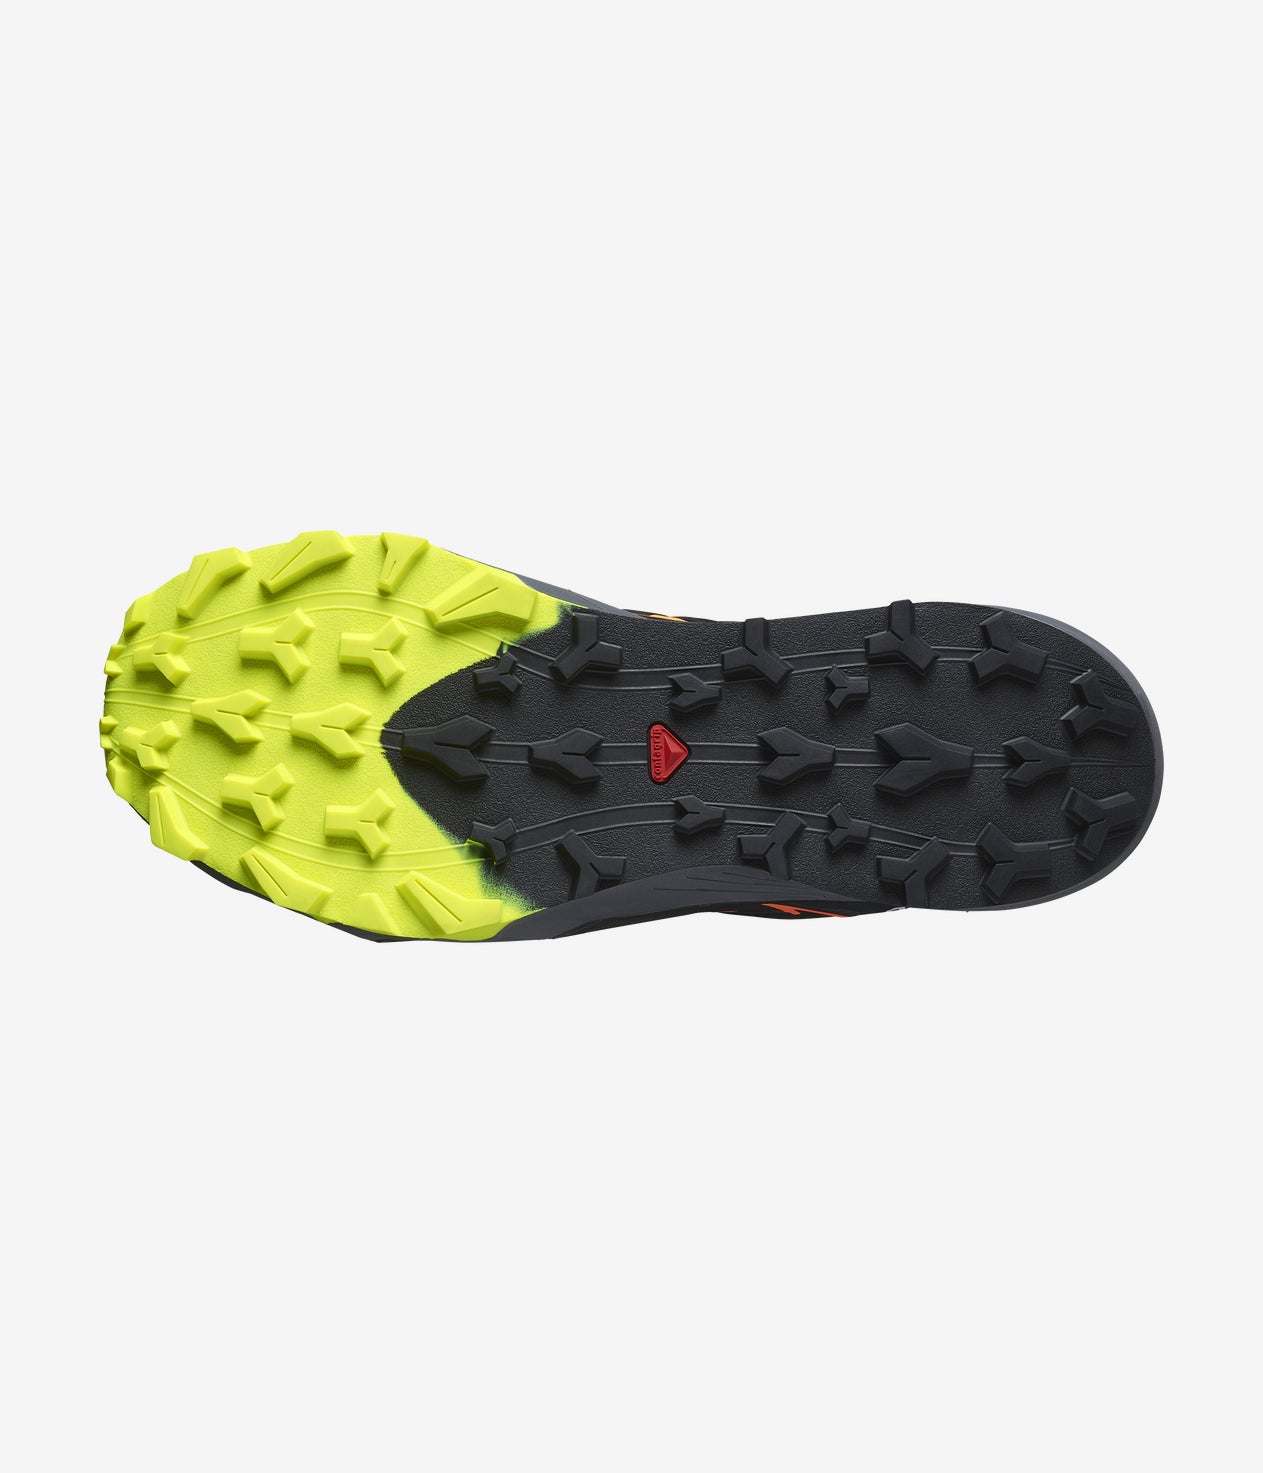 Salomon Men's Trail Running Shoes, Thundercross Black/Yellow